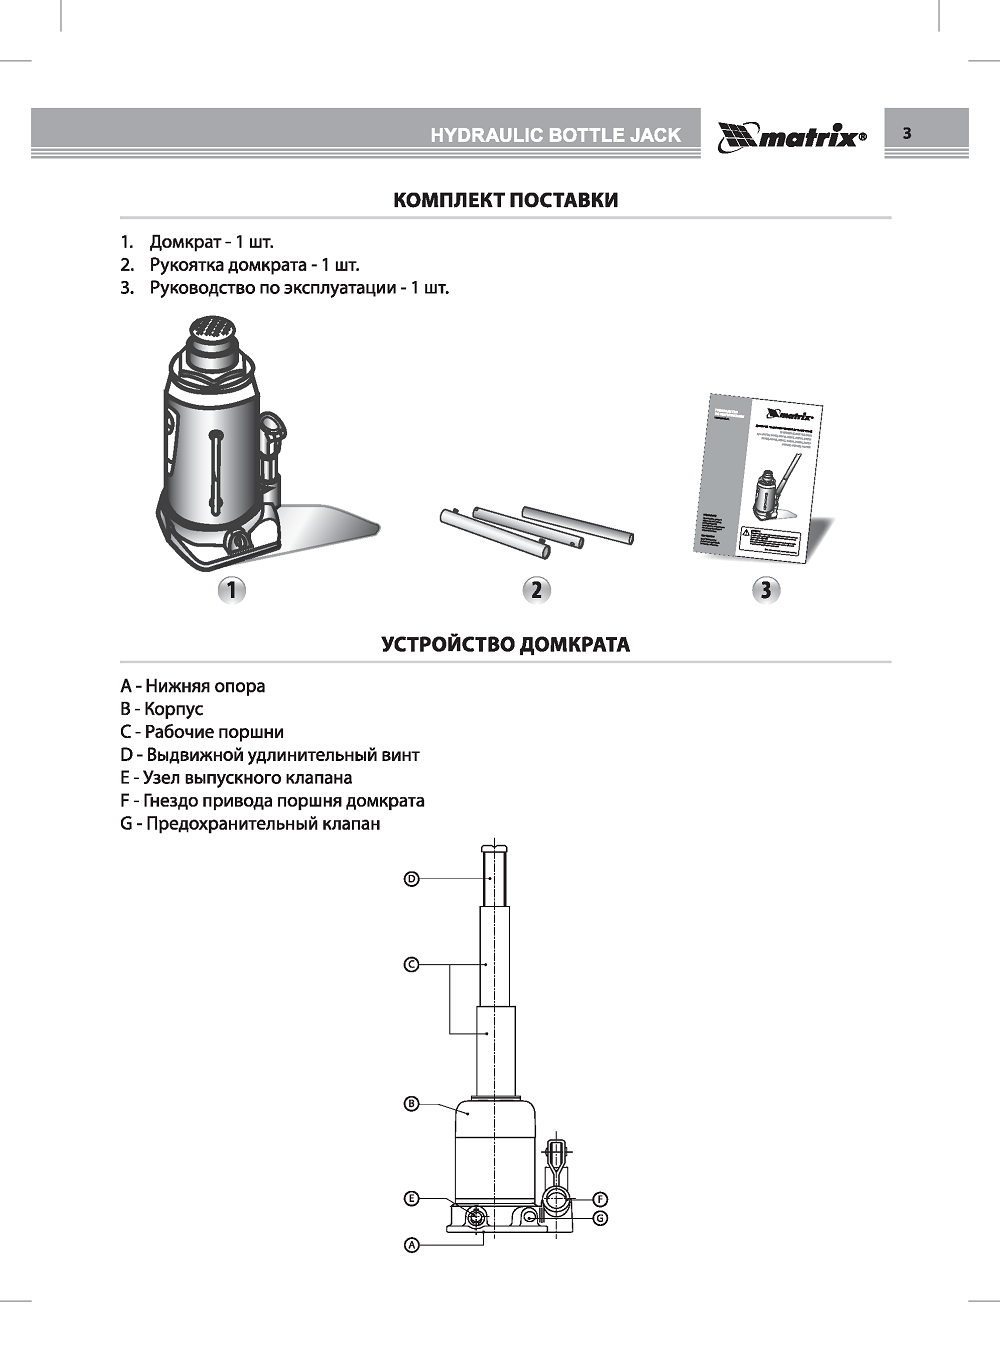 Ремонт гидравлического домкрата: инструкция, инструменты, материалы